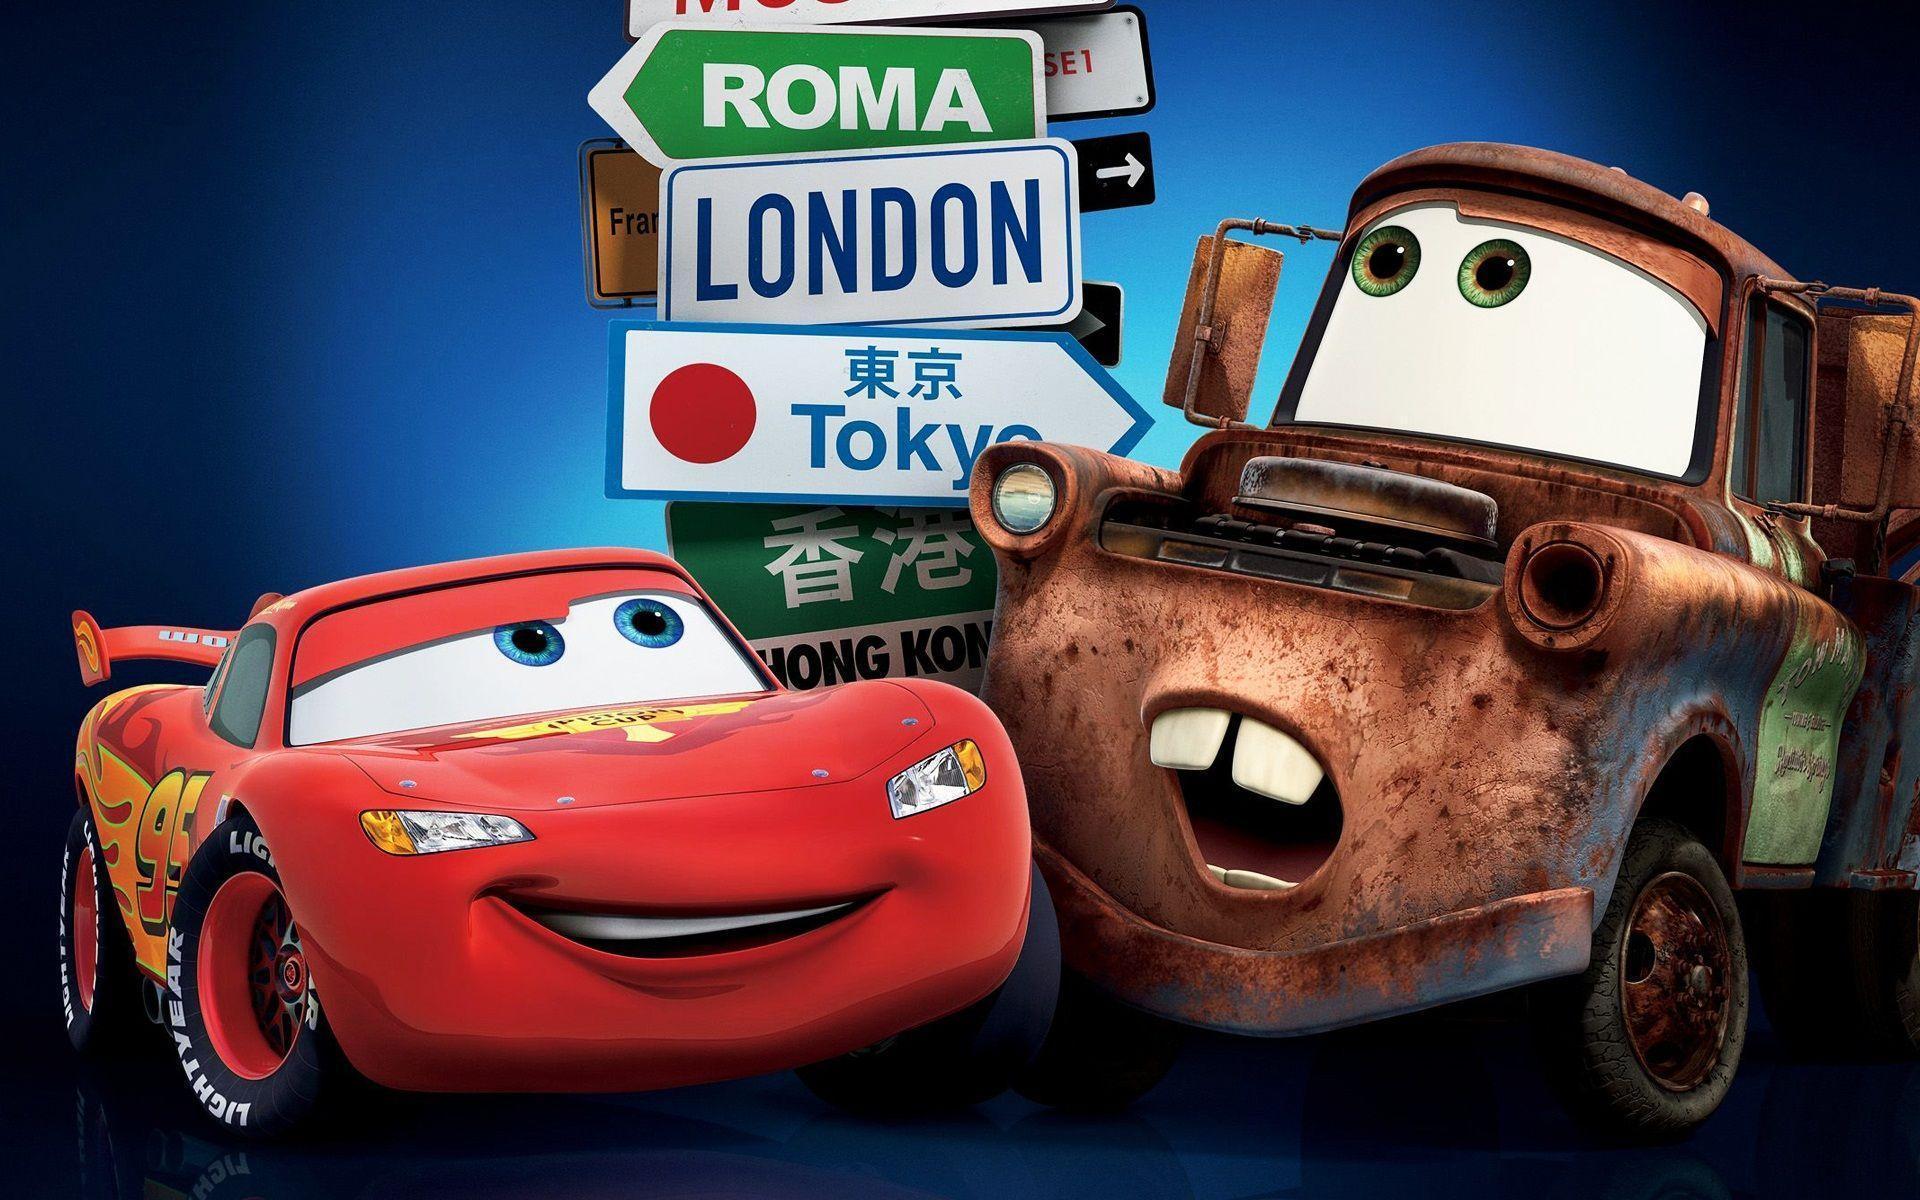 Cars 2 Pixar Cars 2 Wallpaper